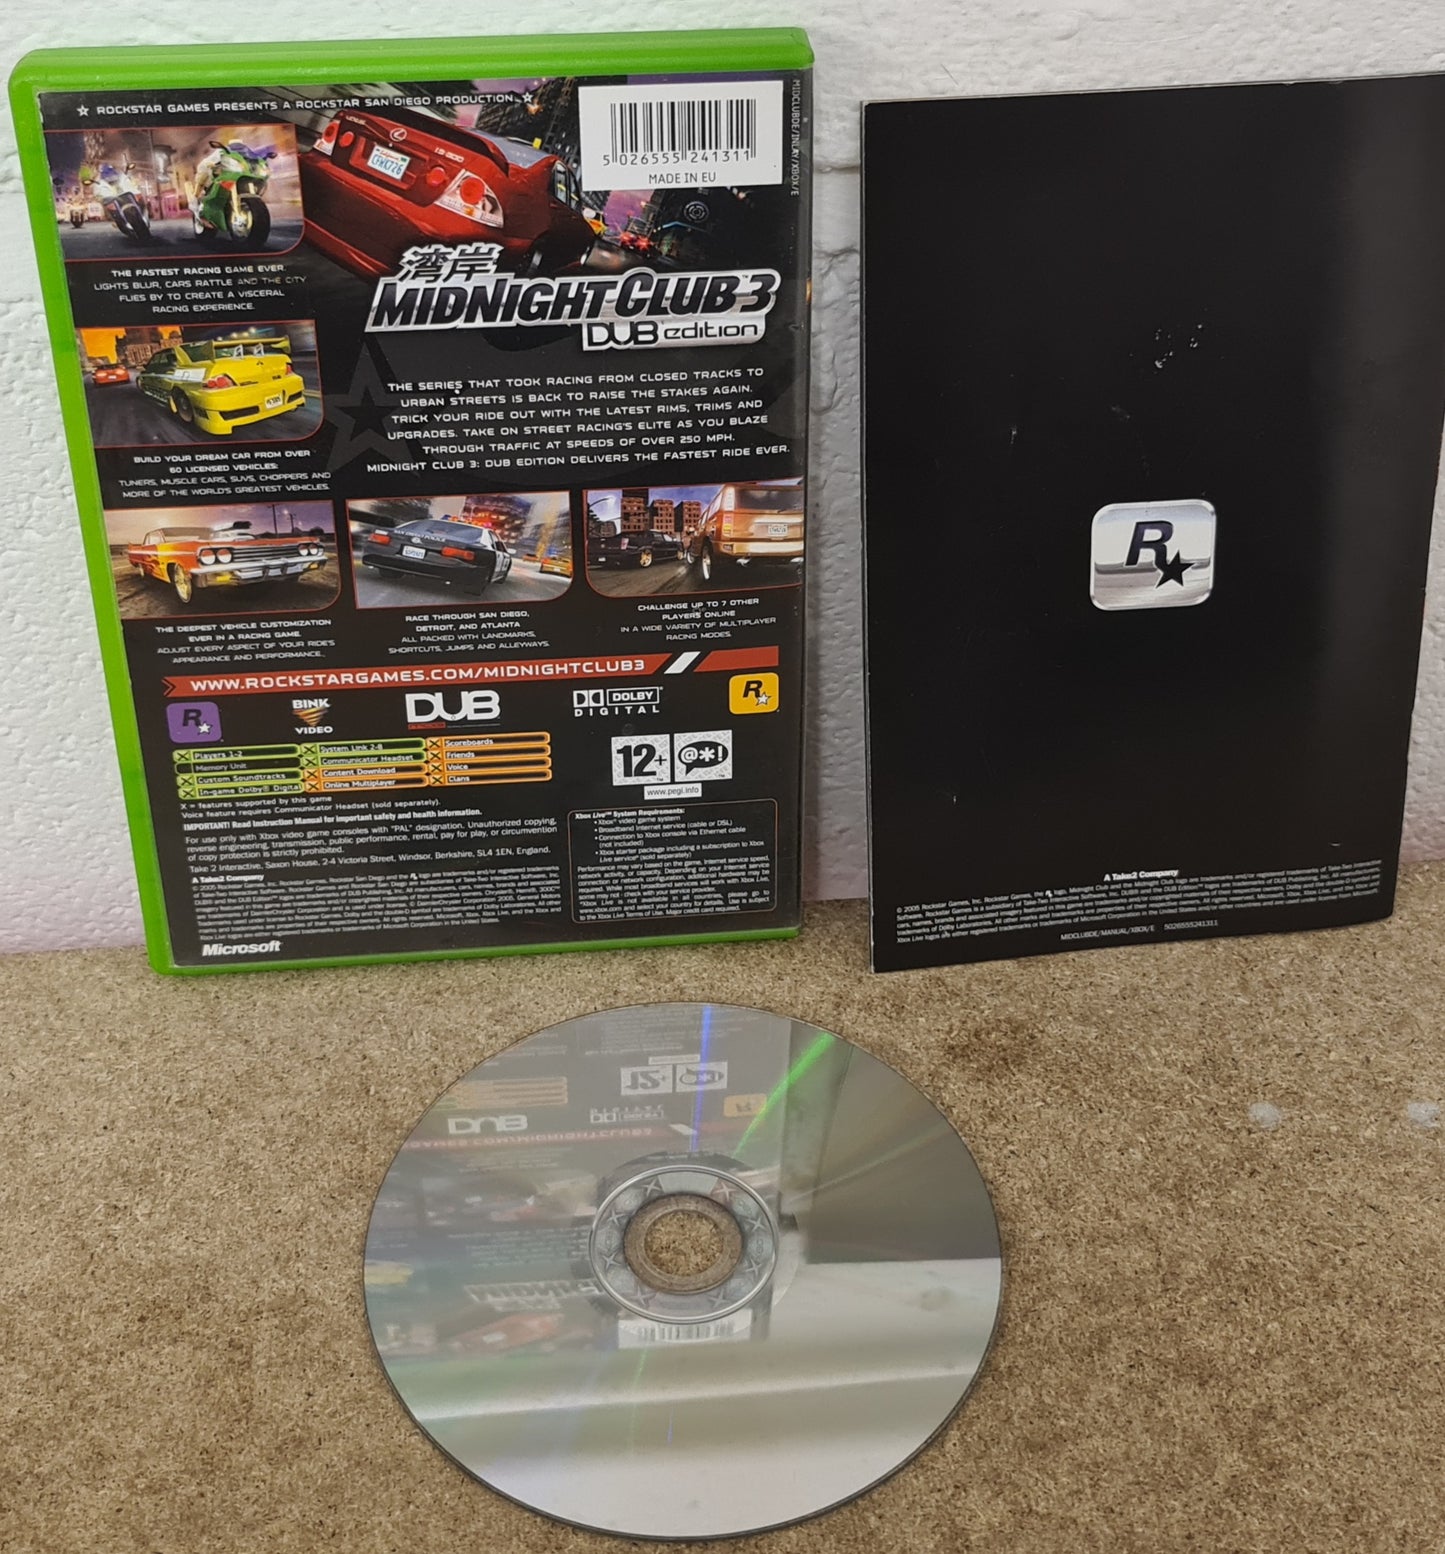 Midnight Club 3 Dub Edition Microsoft Xbox Game